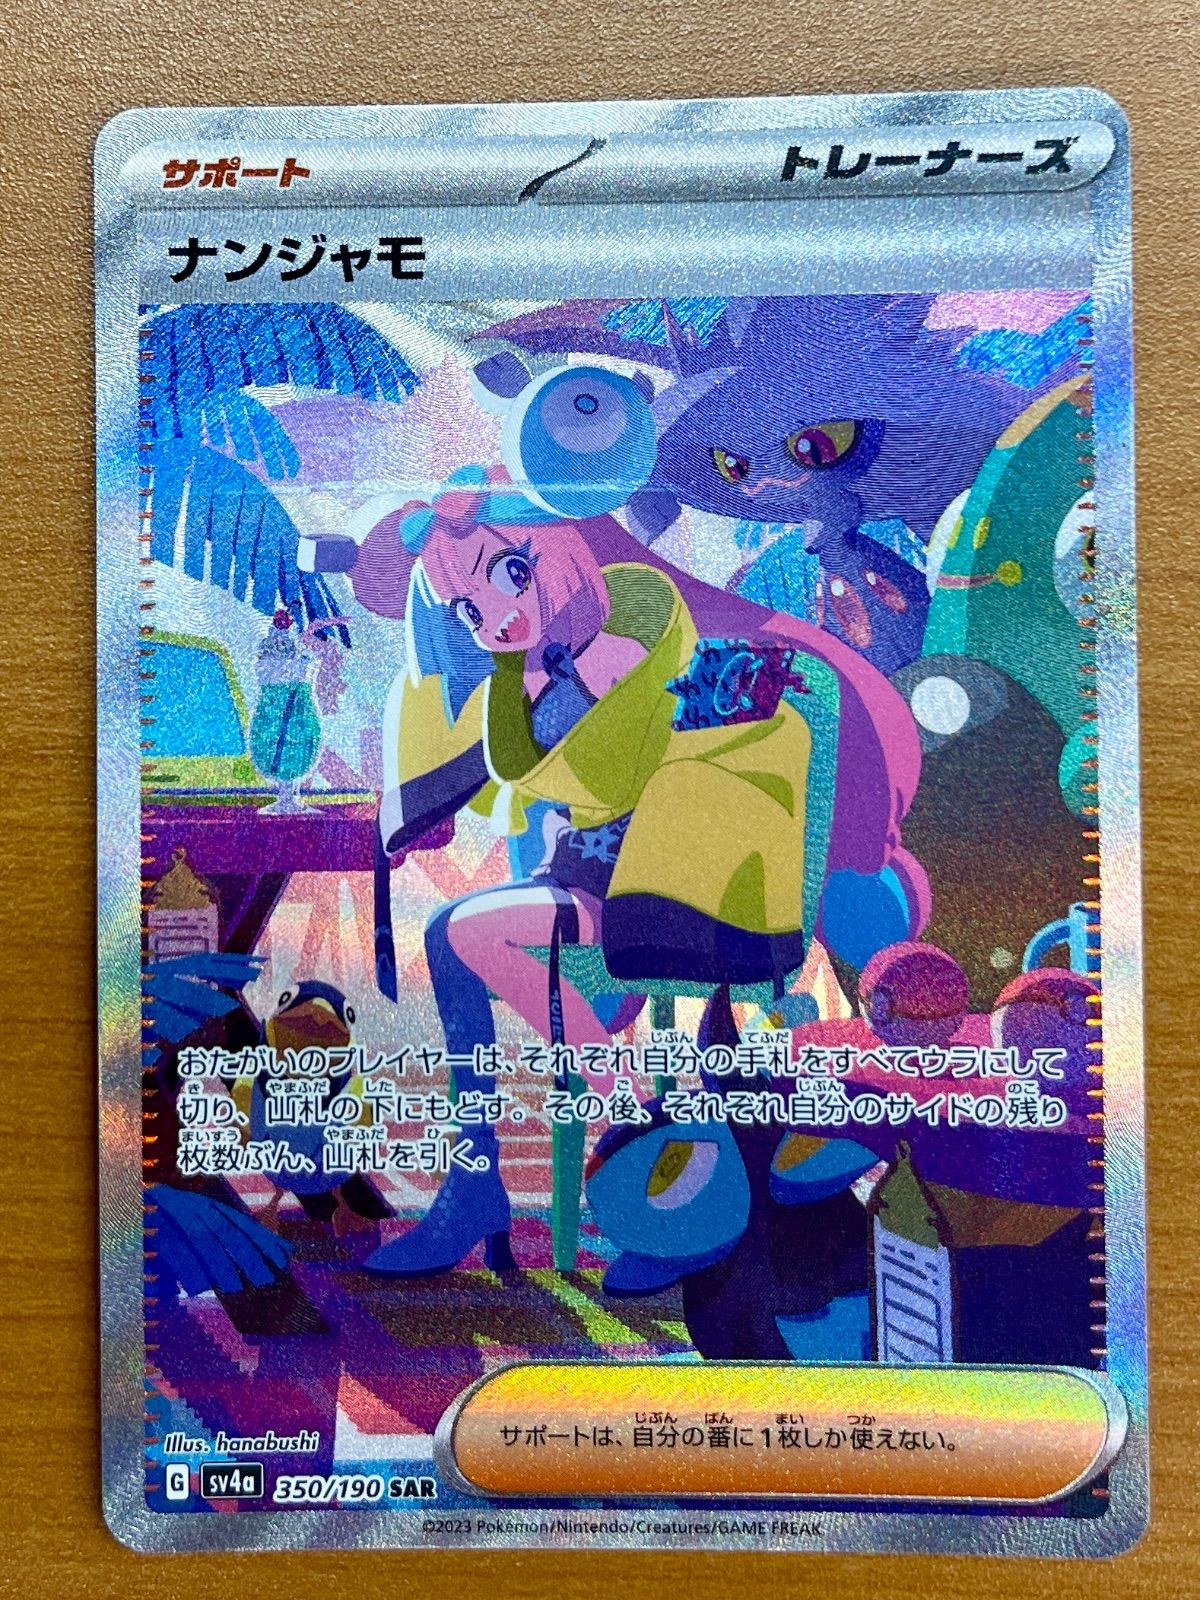 ナンジャモ G sv4a 350/190 SAR ☆ポケモンカードゲーム ① - メルカリ